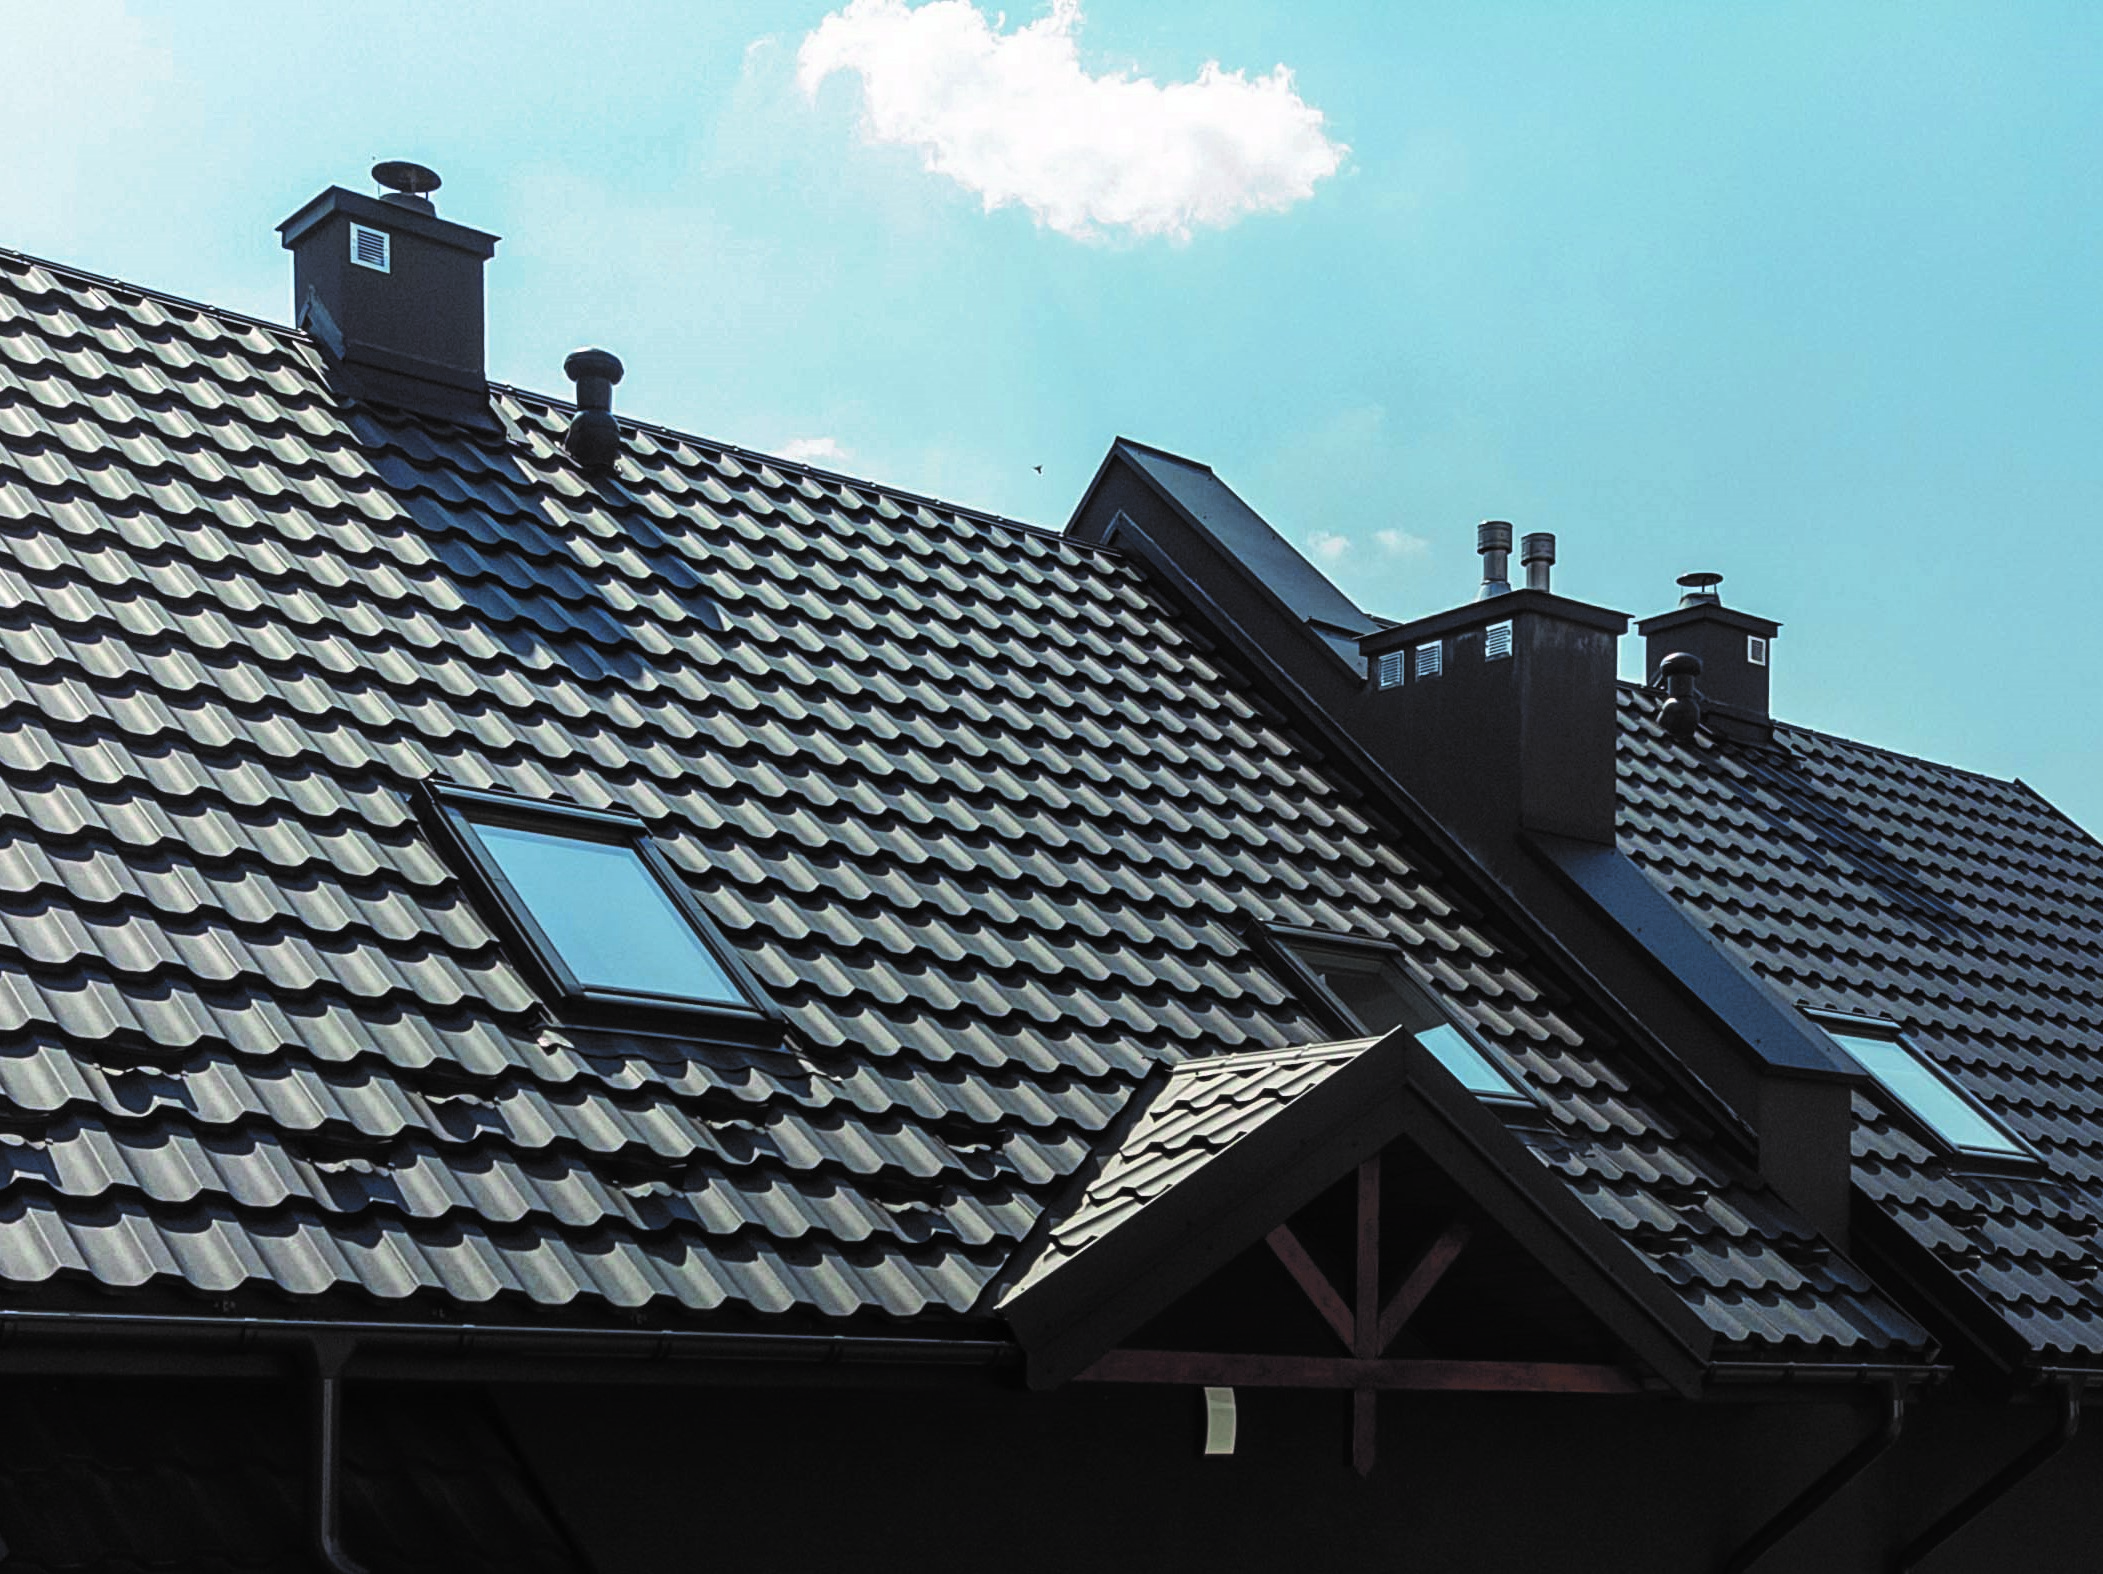 Szukasz pokrycia dachowego – tylko blachodachówki panelowe!